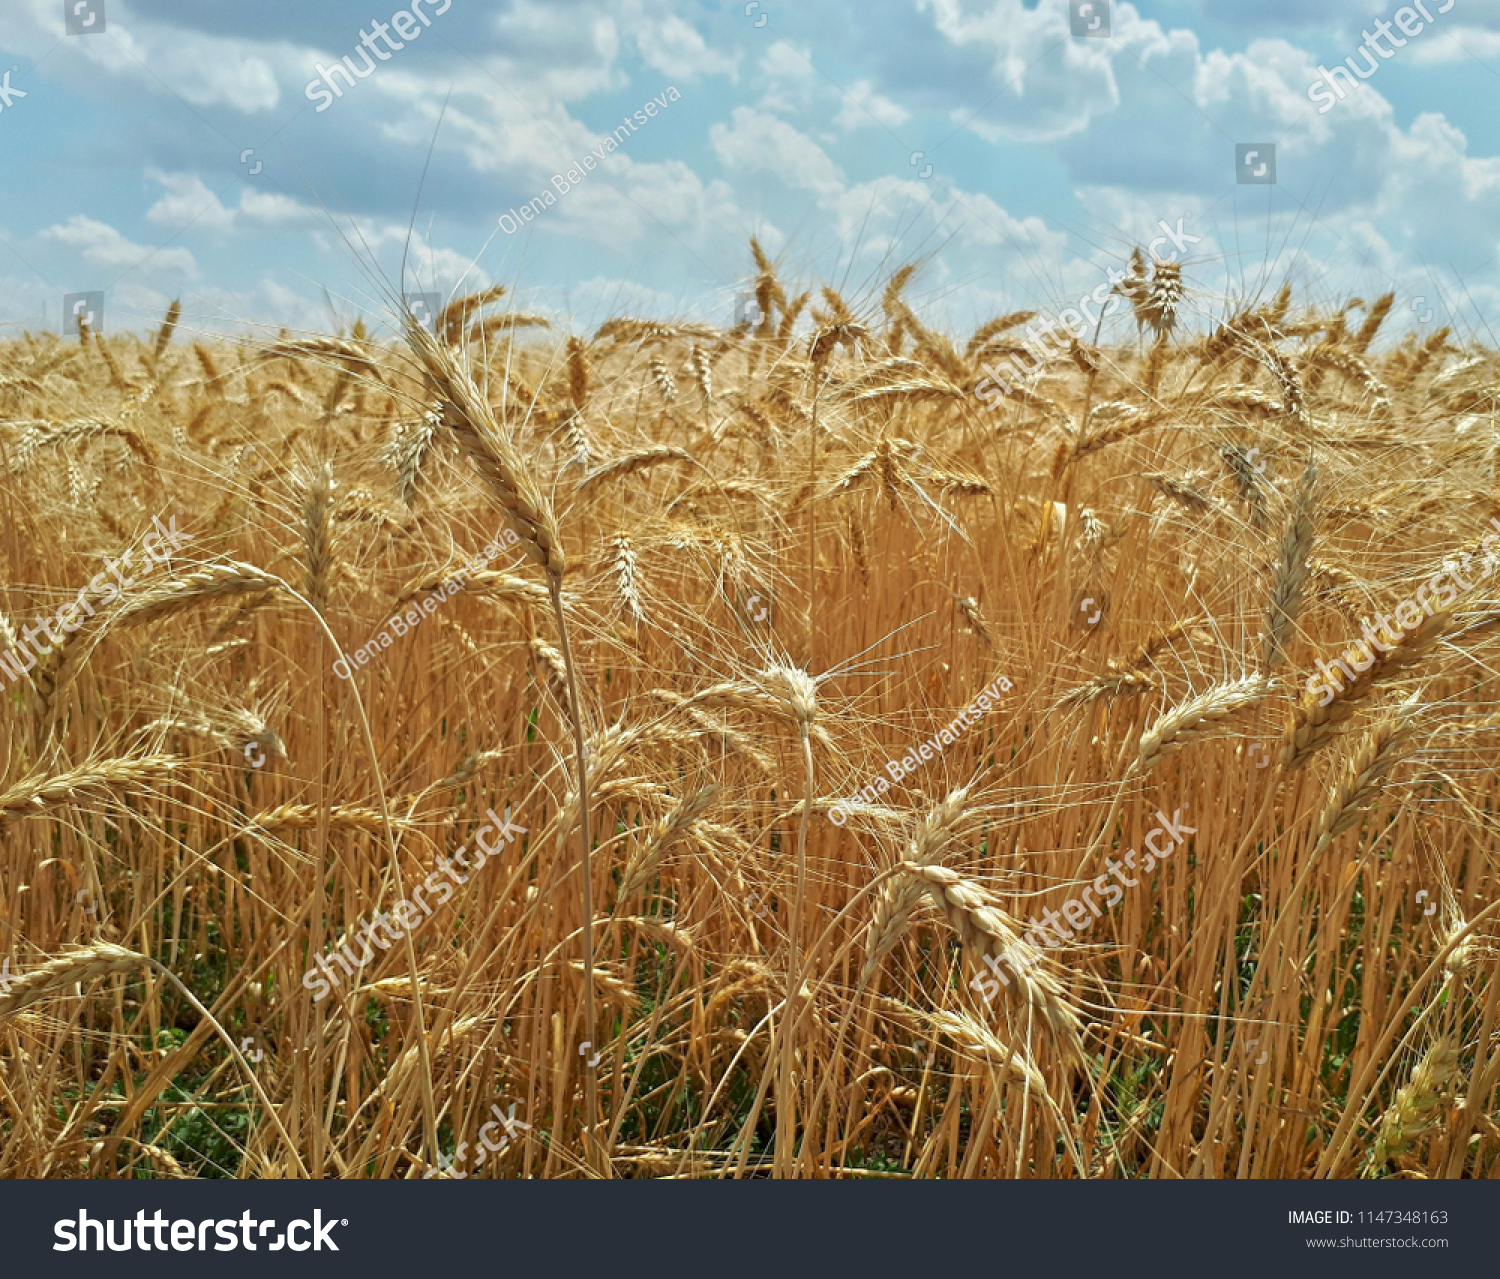 Rye field under the summer hot sun, ripe ears of rye #1147348163